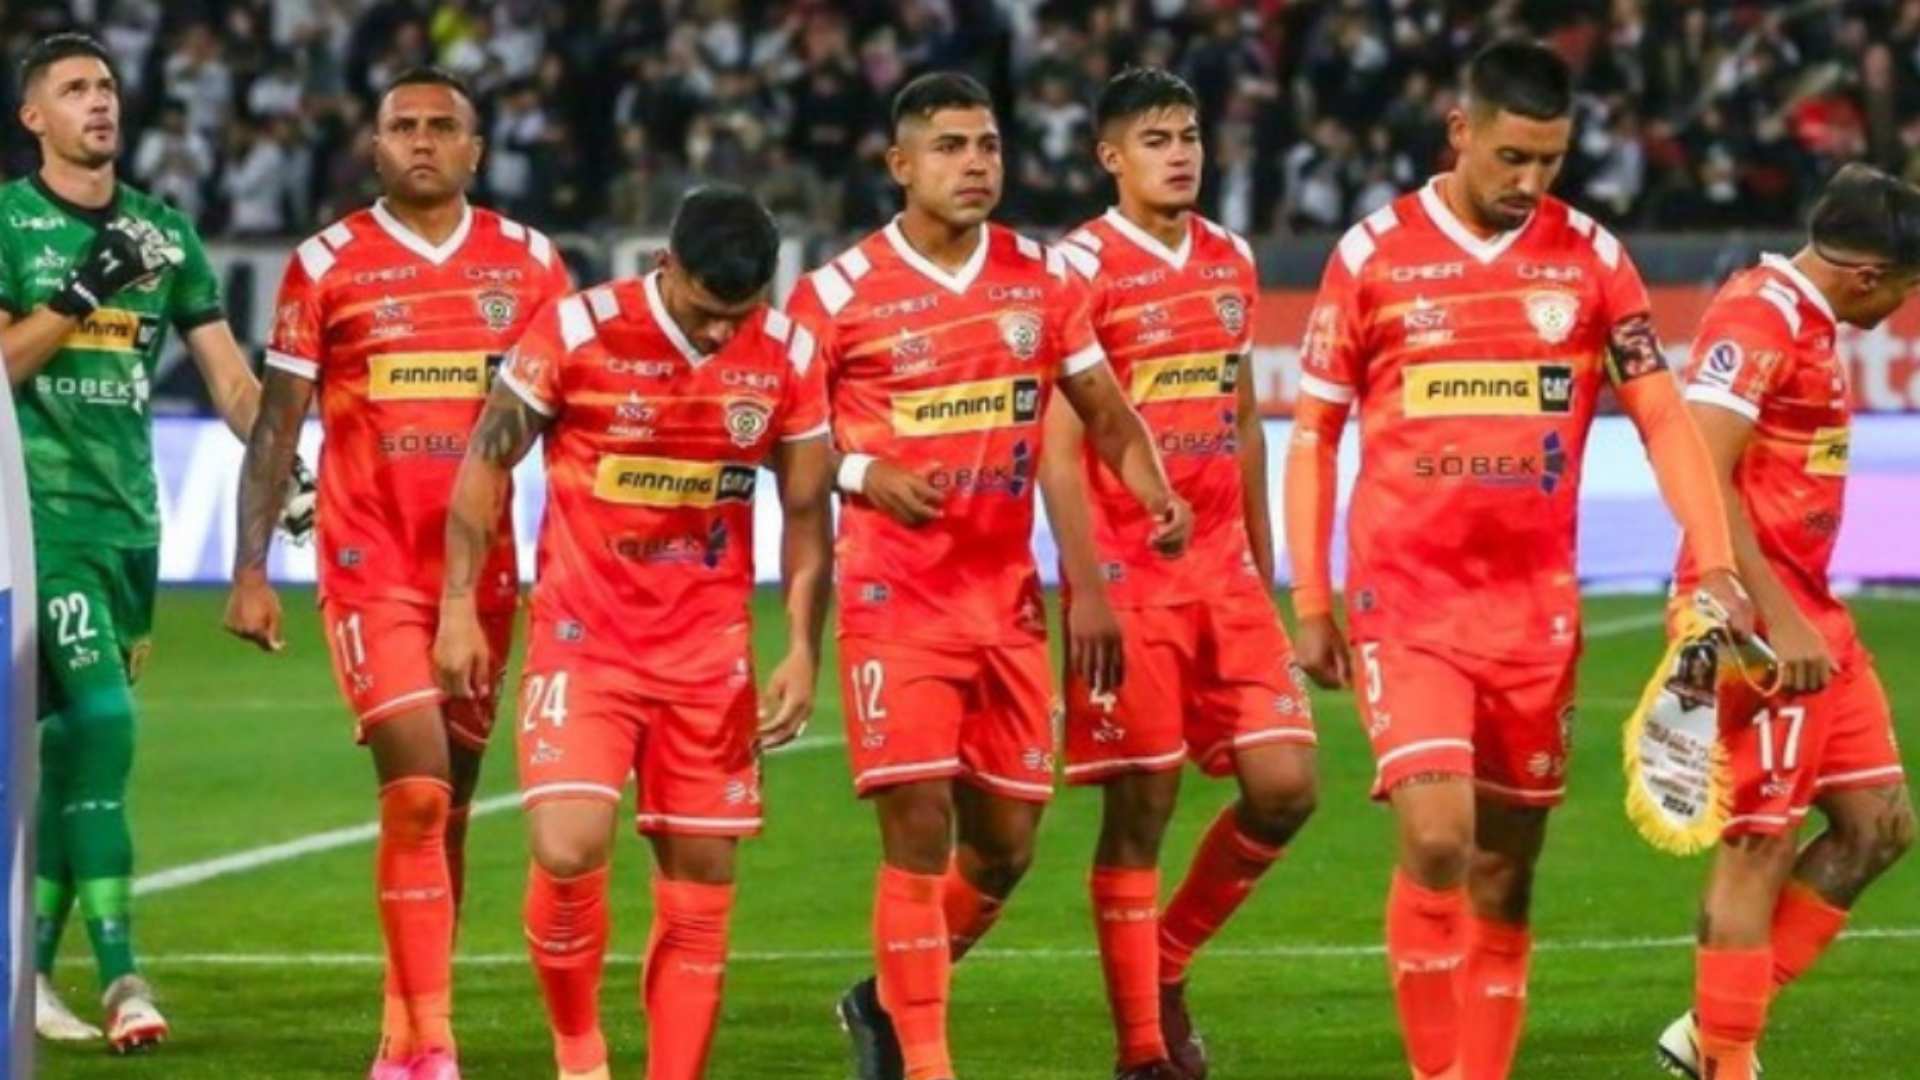 Nueve futbolistas acusados de abusar a joven en Chile